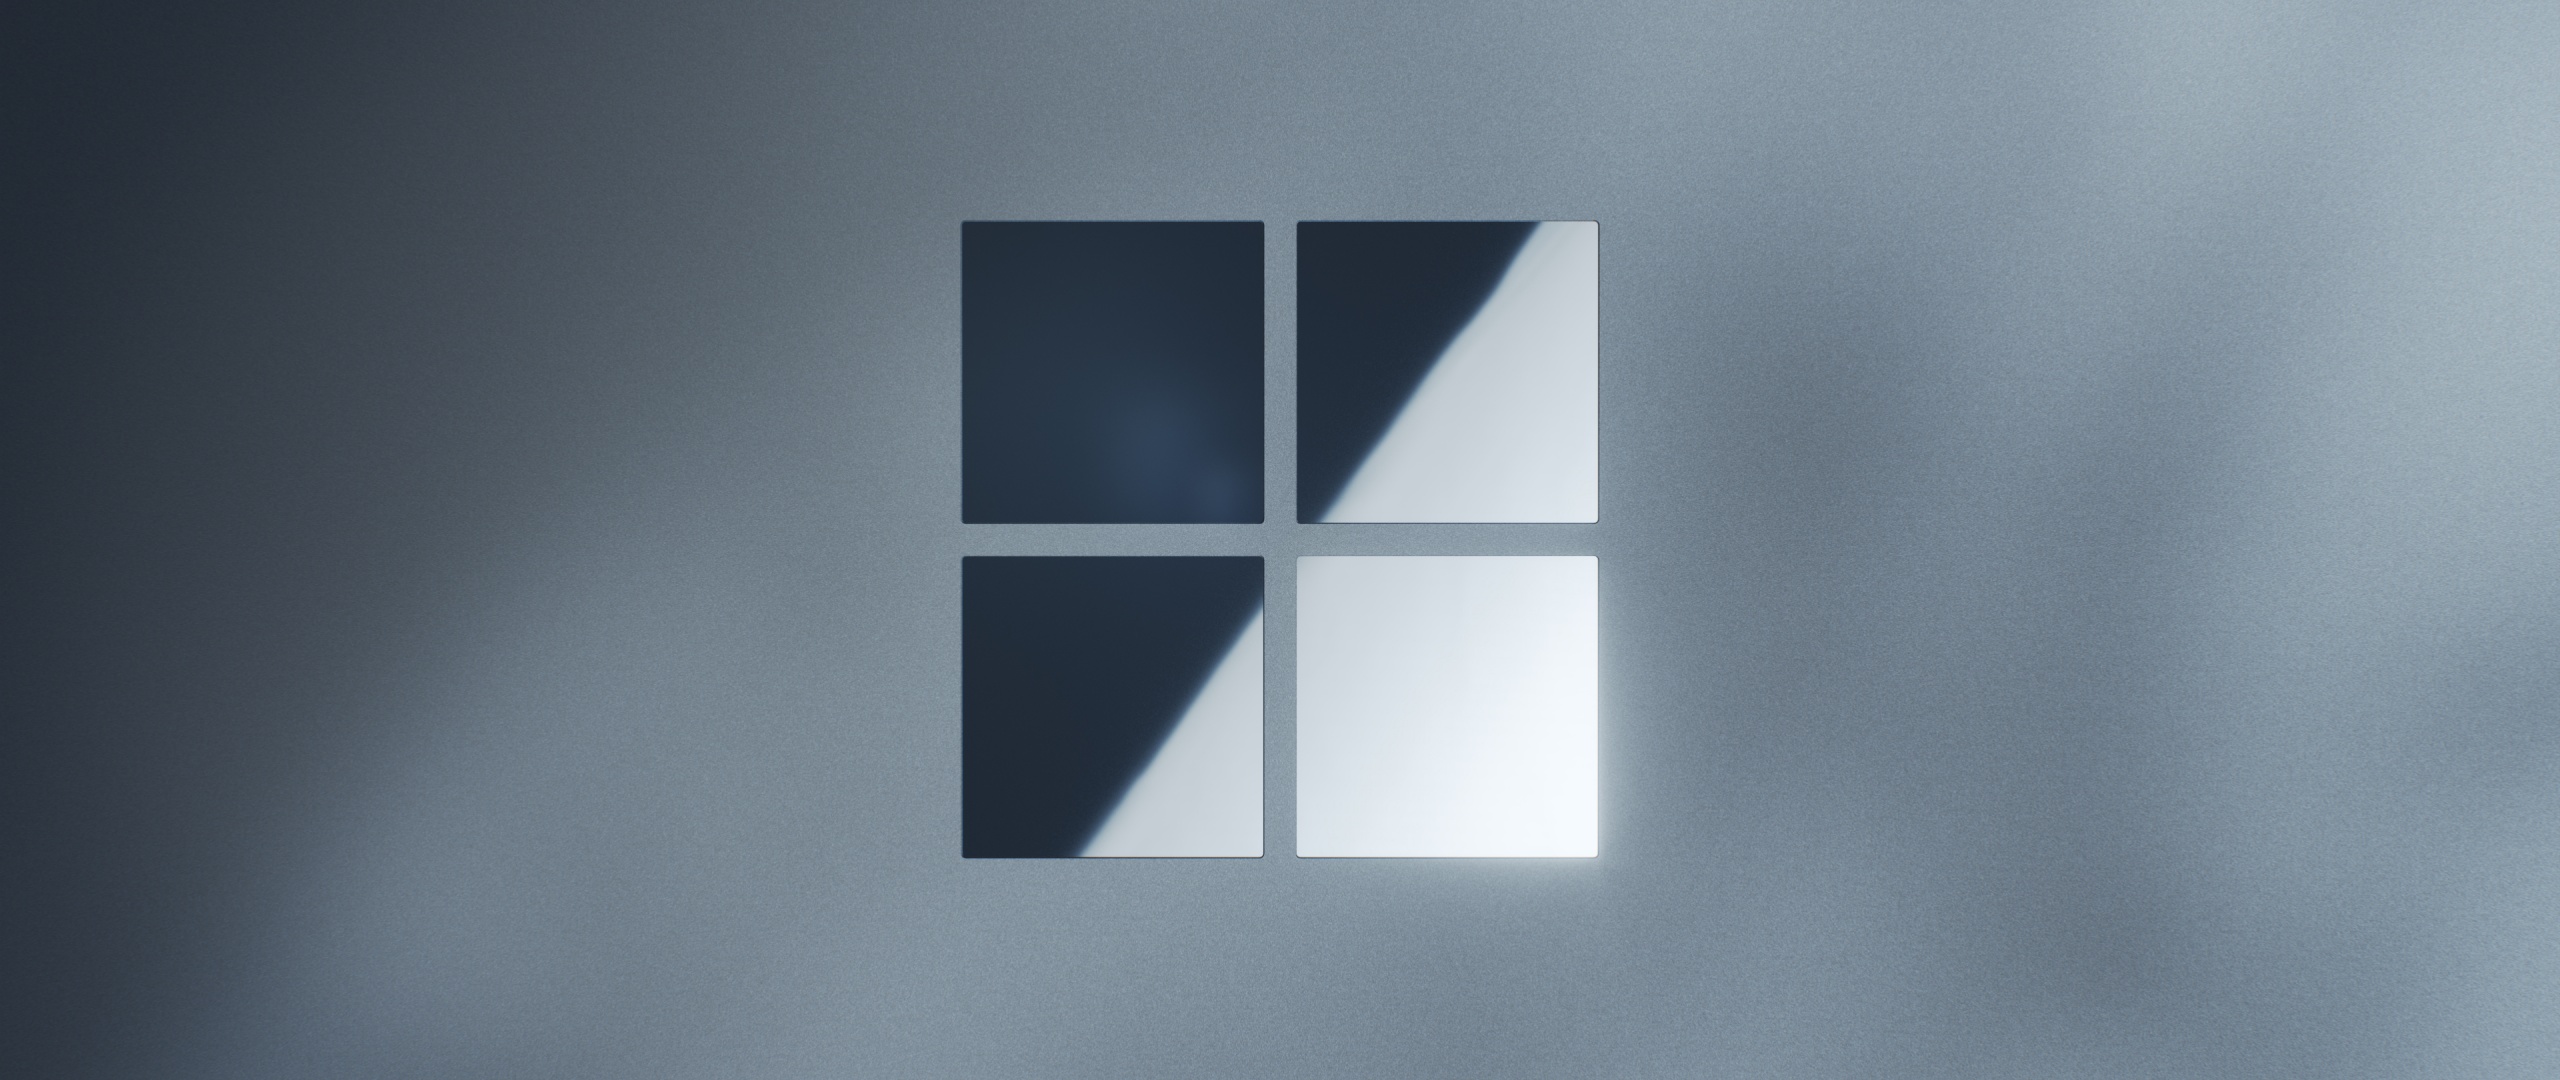 Microsoft Surface Laptop Wallpaper 4K, Windows logo